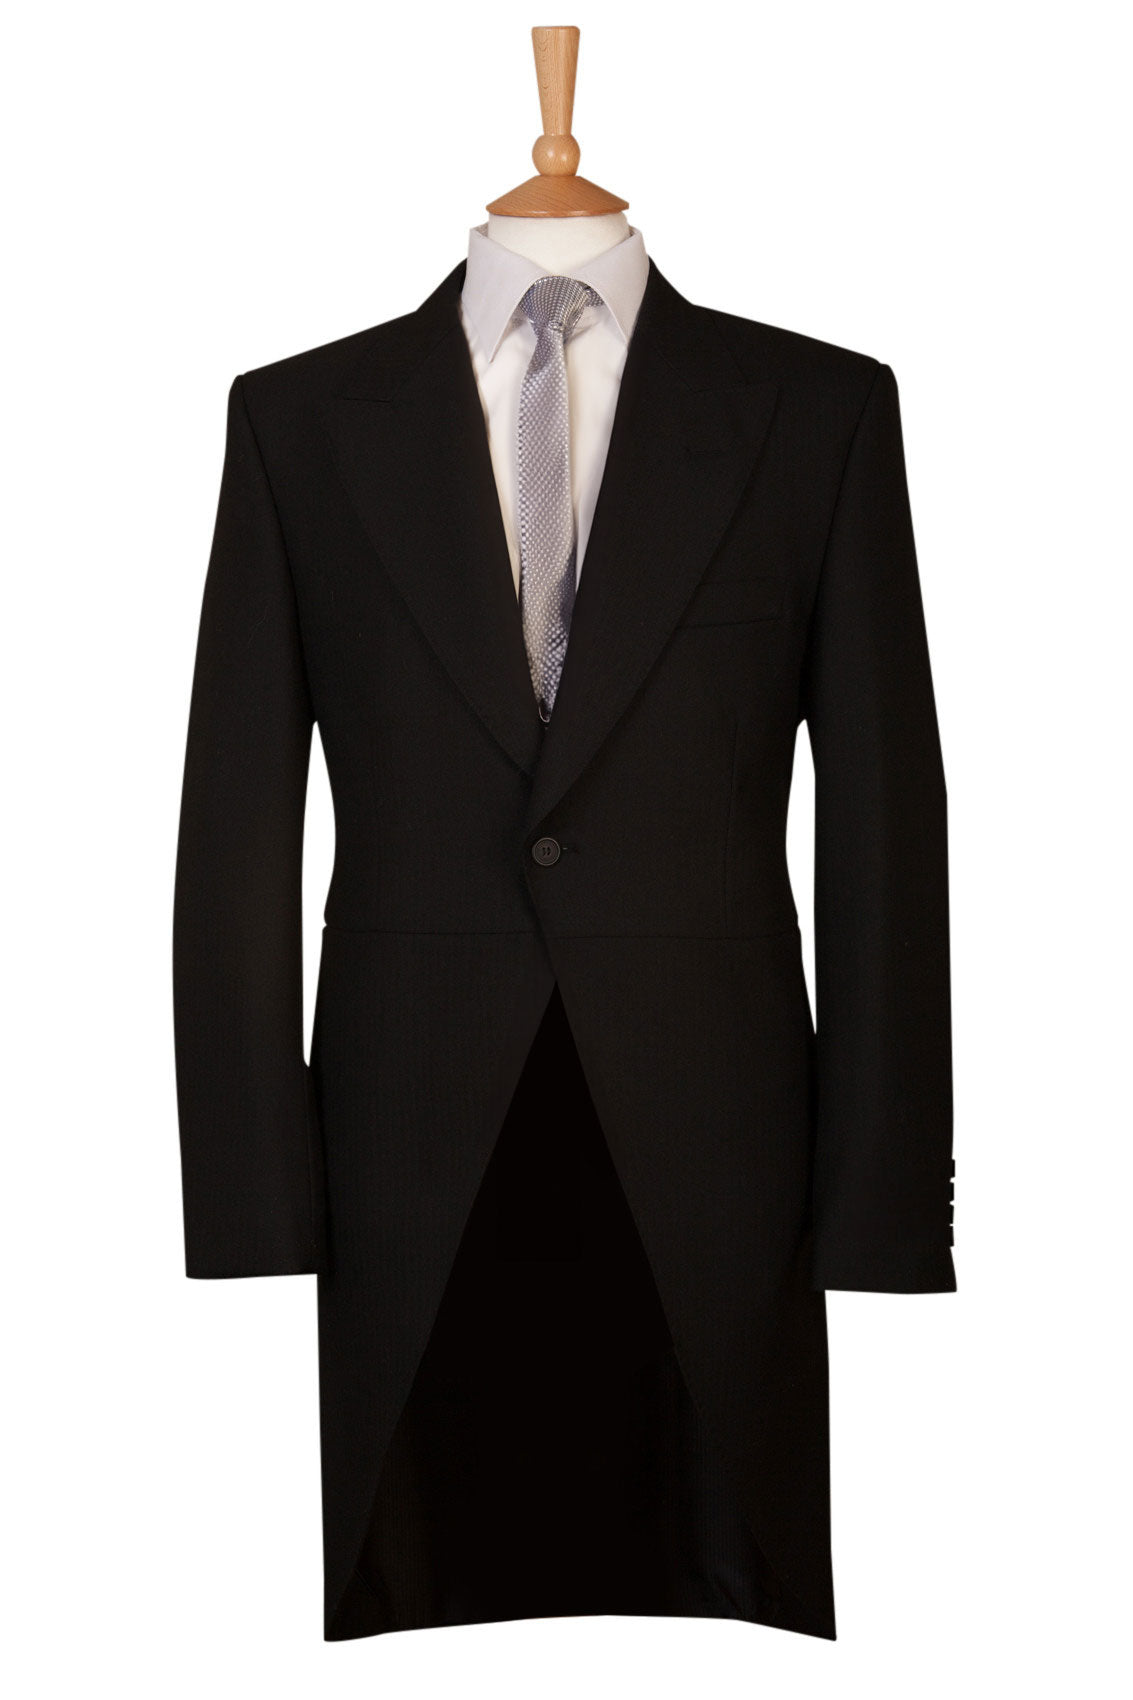 Black Herringbone Tailcoat Jacket - Brand New